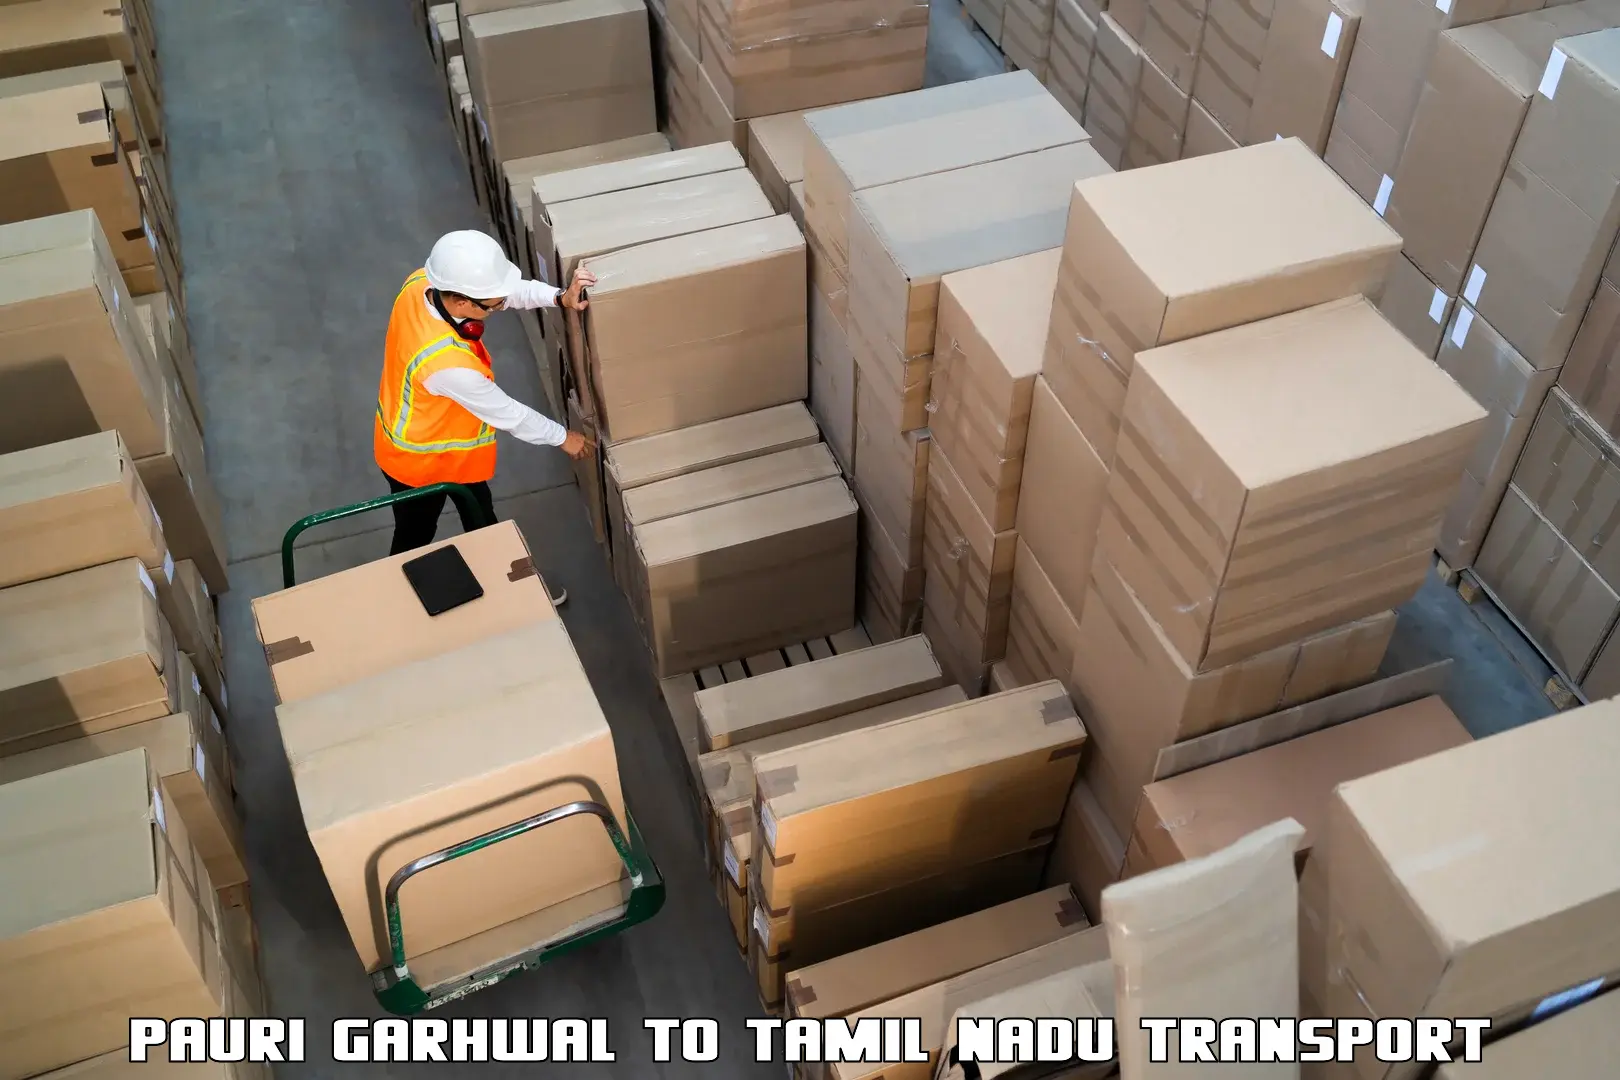 Logistics transportation services Pauri Garhwal to Sriperumbudur